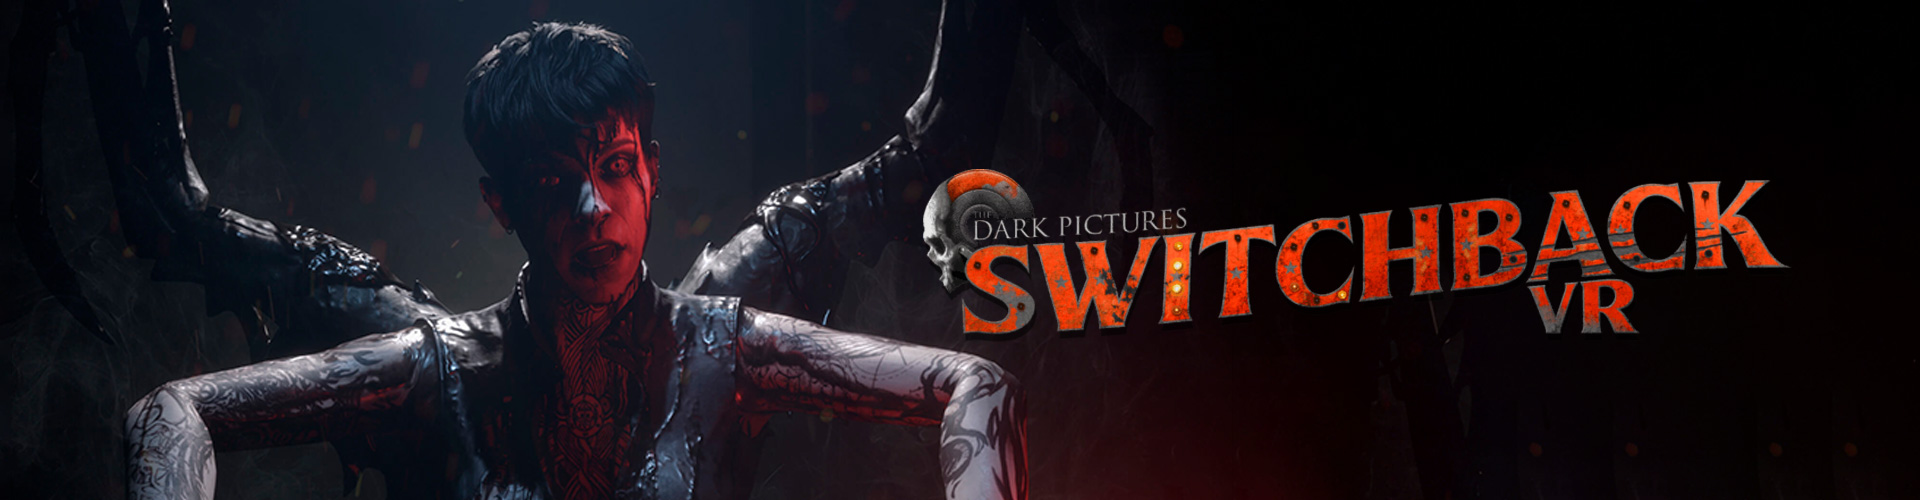 The Dark Pictures: Switchback es un juego de terror para PS5 en VR